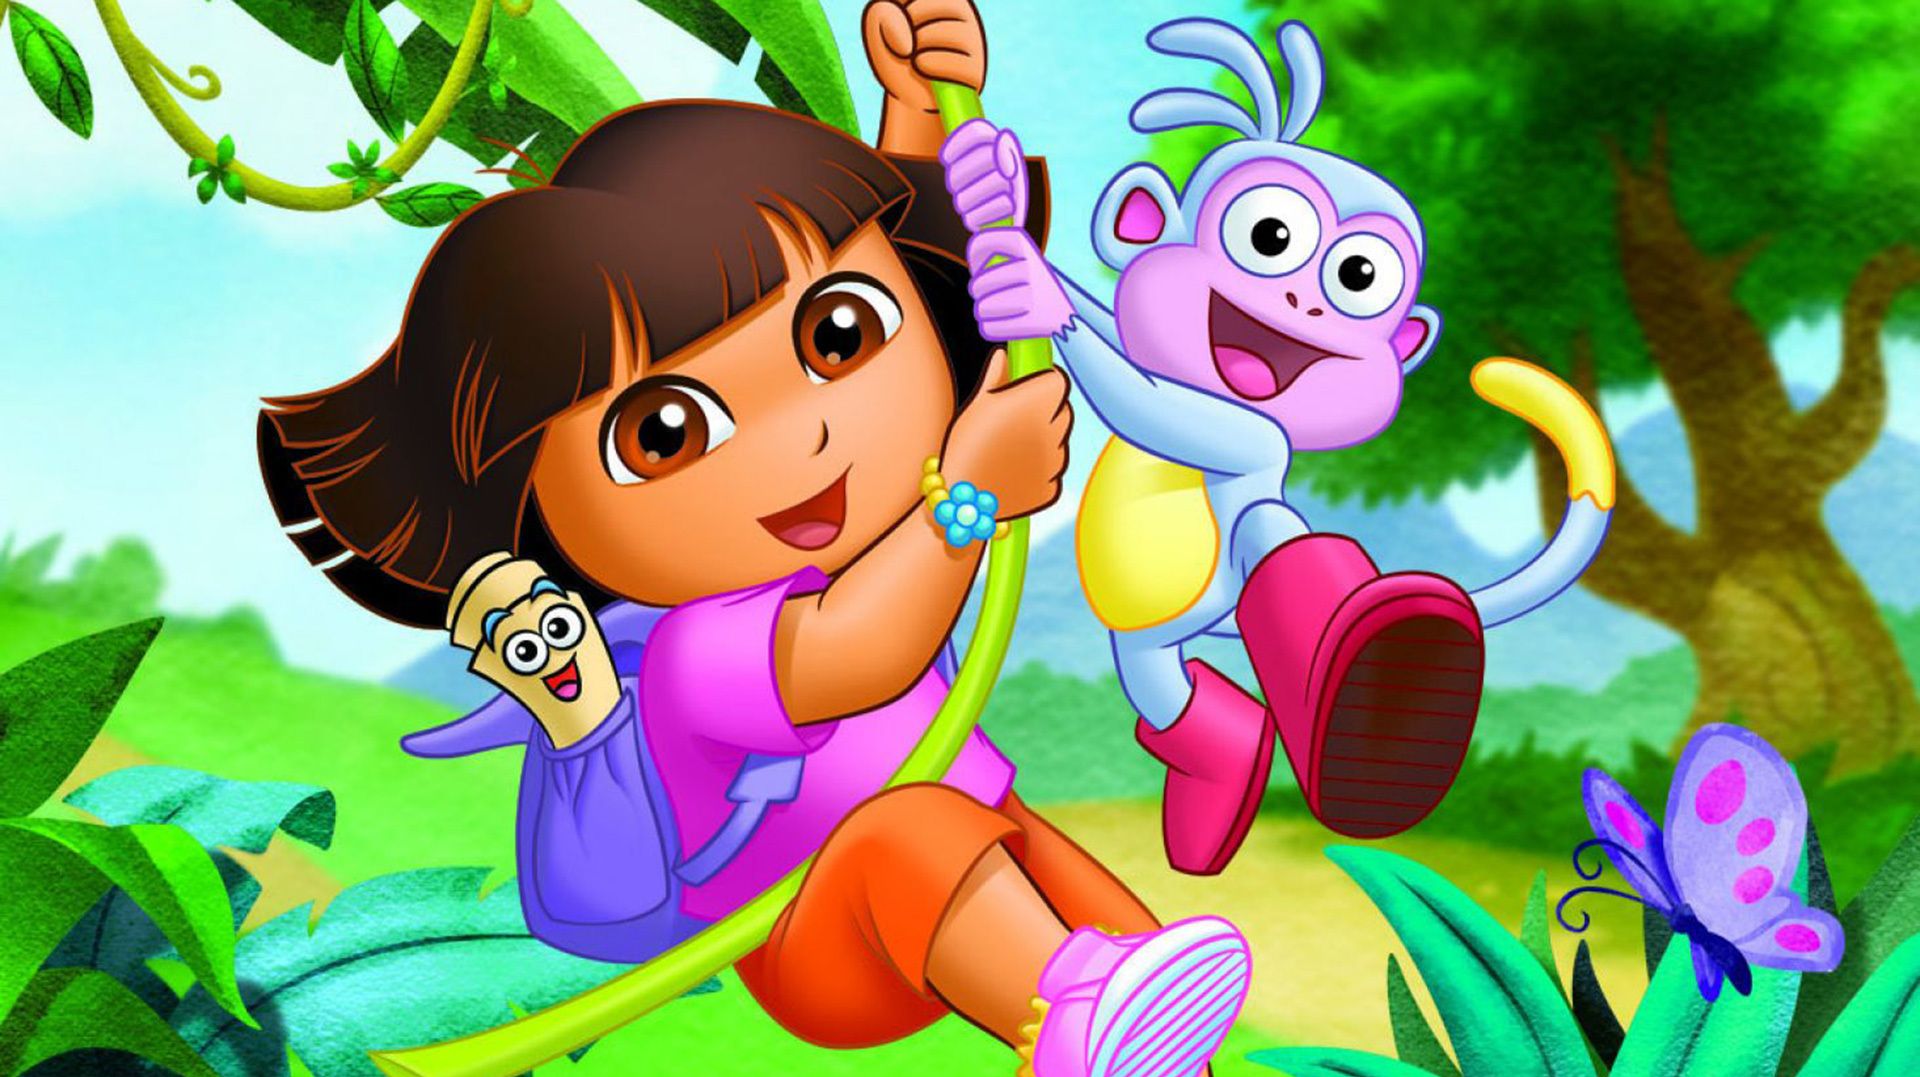 Dora the Explorer Movie Casts Micke Moreno as Diego